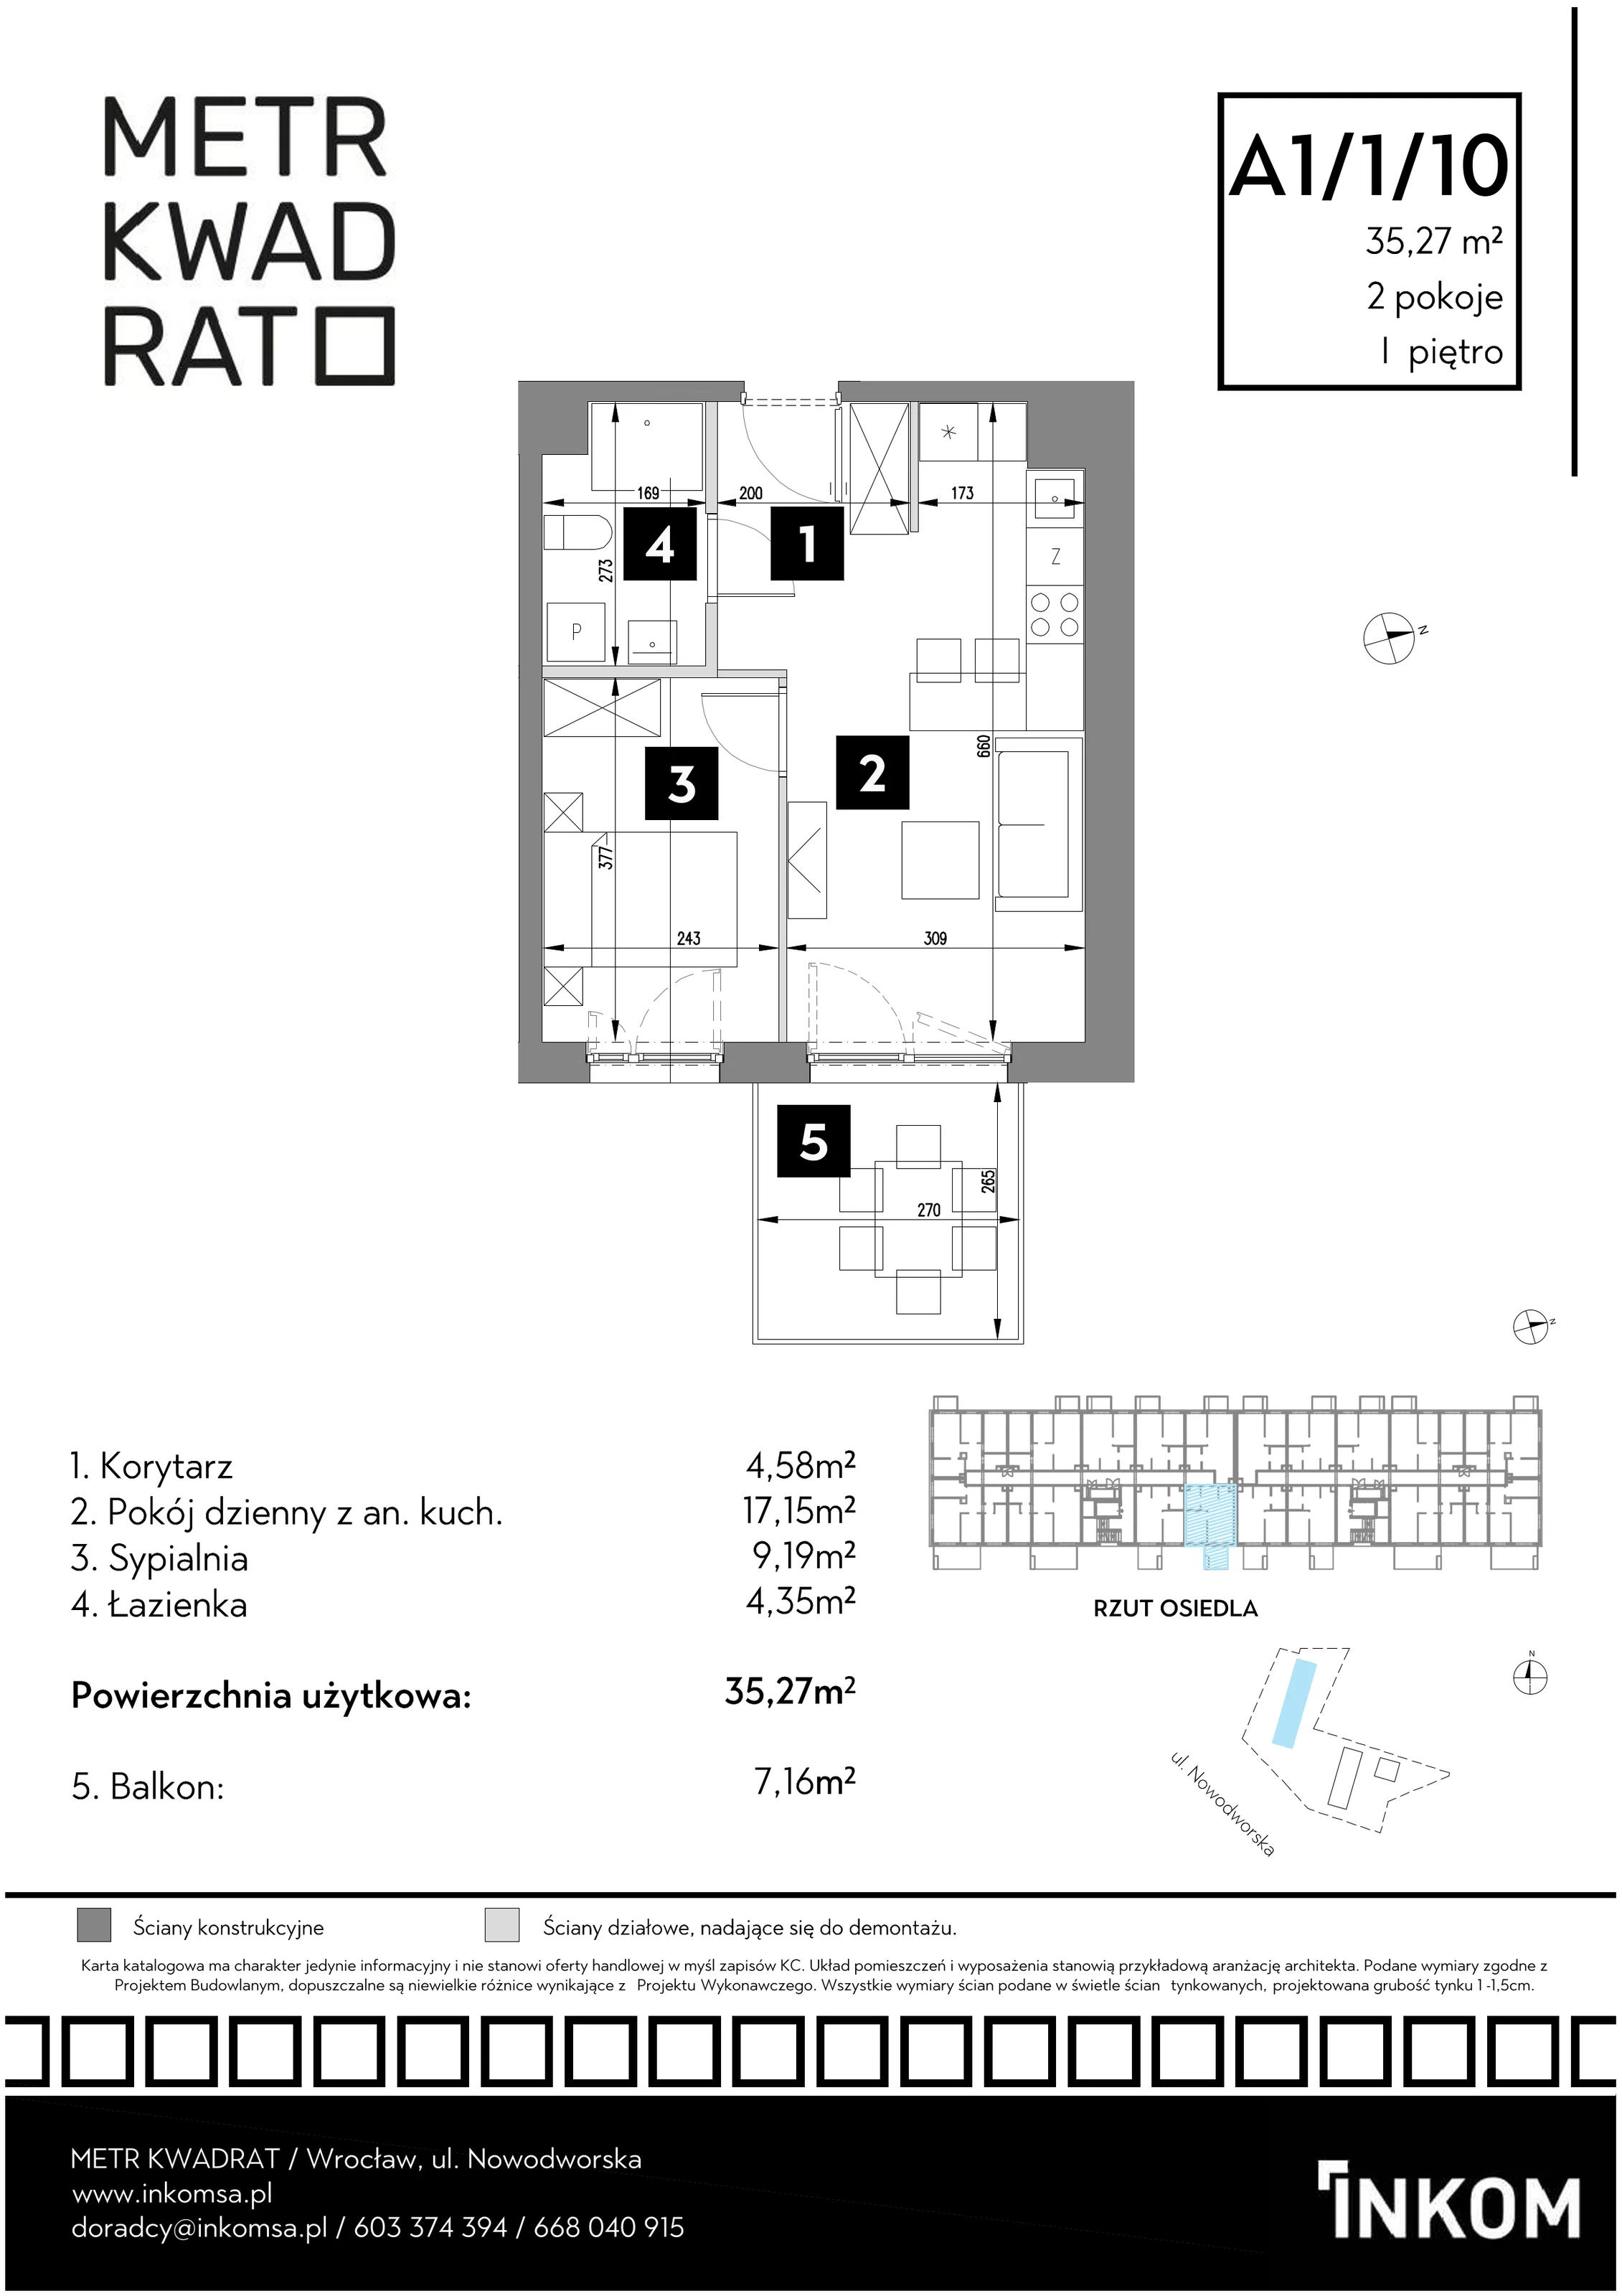 Mieszkanie 35,27 m², piętro 1, oferta nr A1/1/10, Metr Kwadrat, Wrocław, Nowy Dwór, ul. Nowodworska 17B